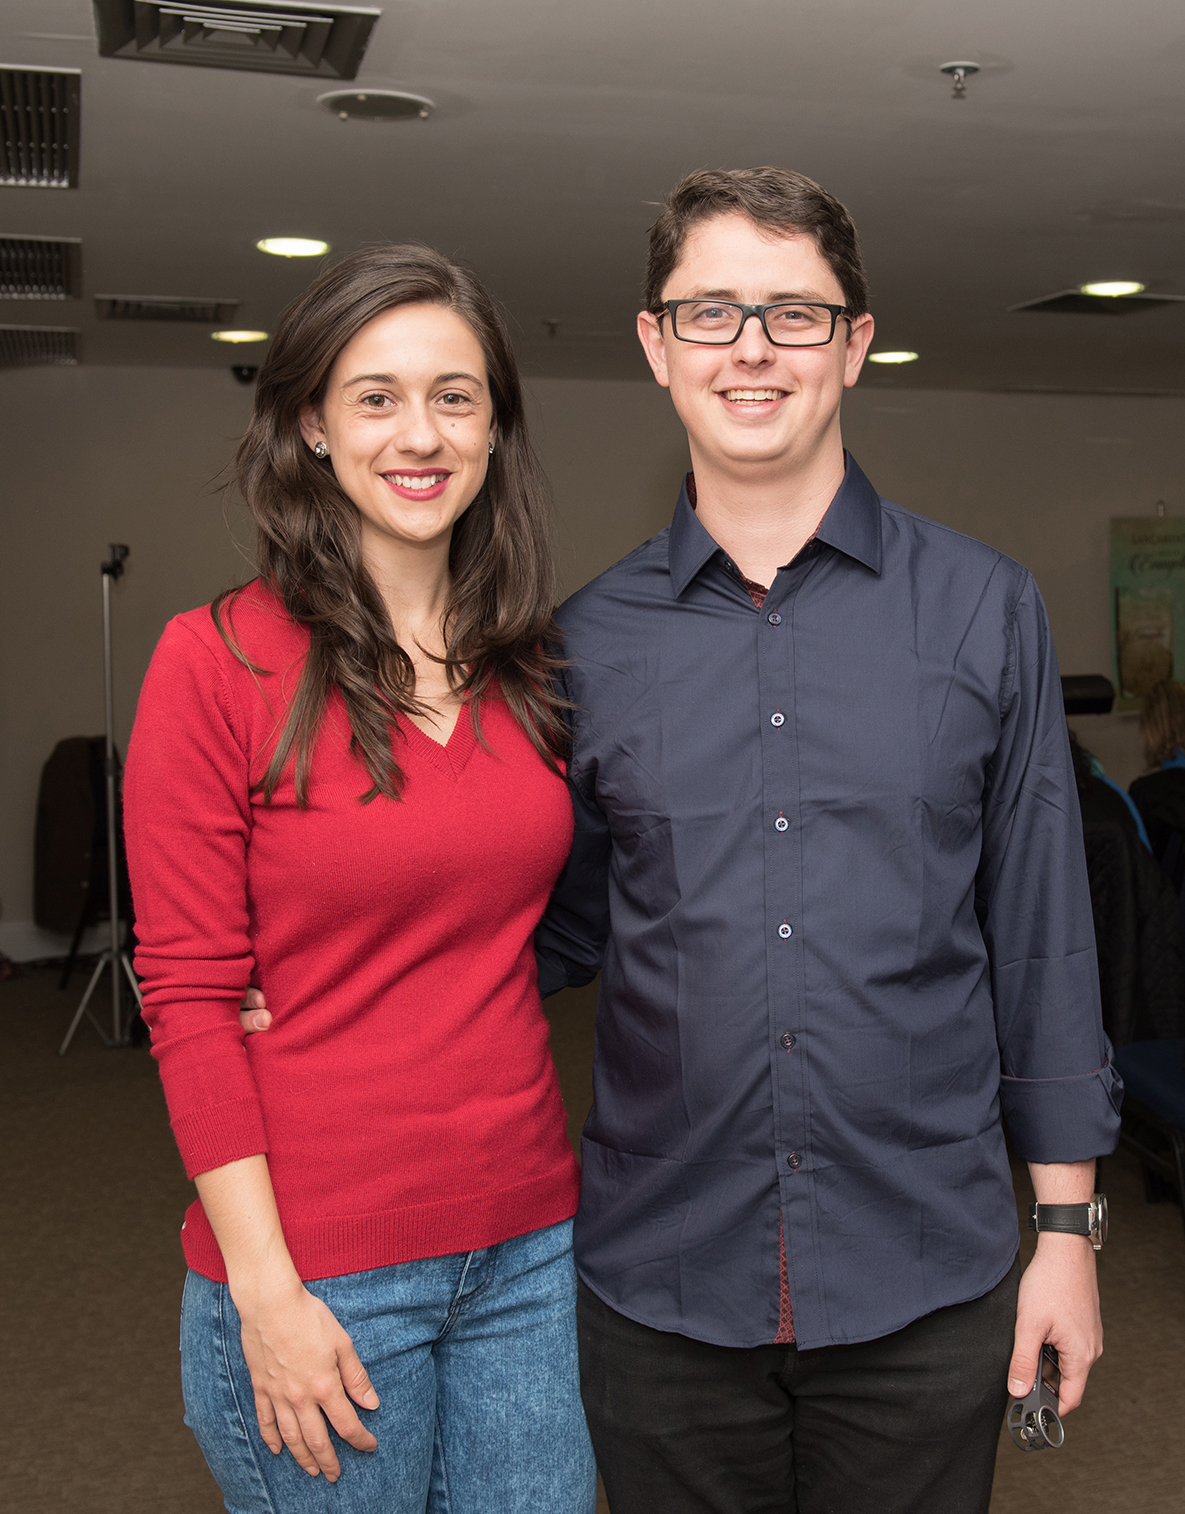 Carolina Morais e o autor Vinícius Lara, no lançamento do livro “Cartas do Evangelho”, no Victory Hotel Foto: Aline Bastos